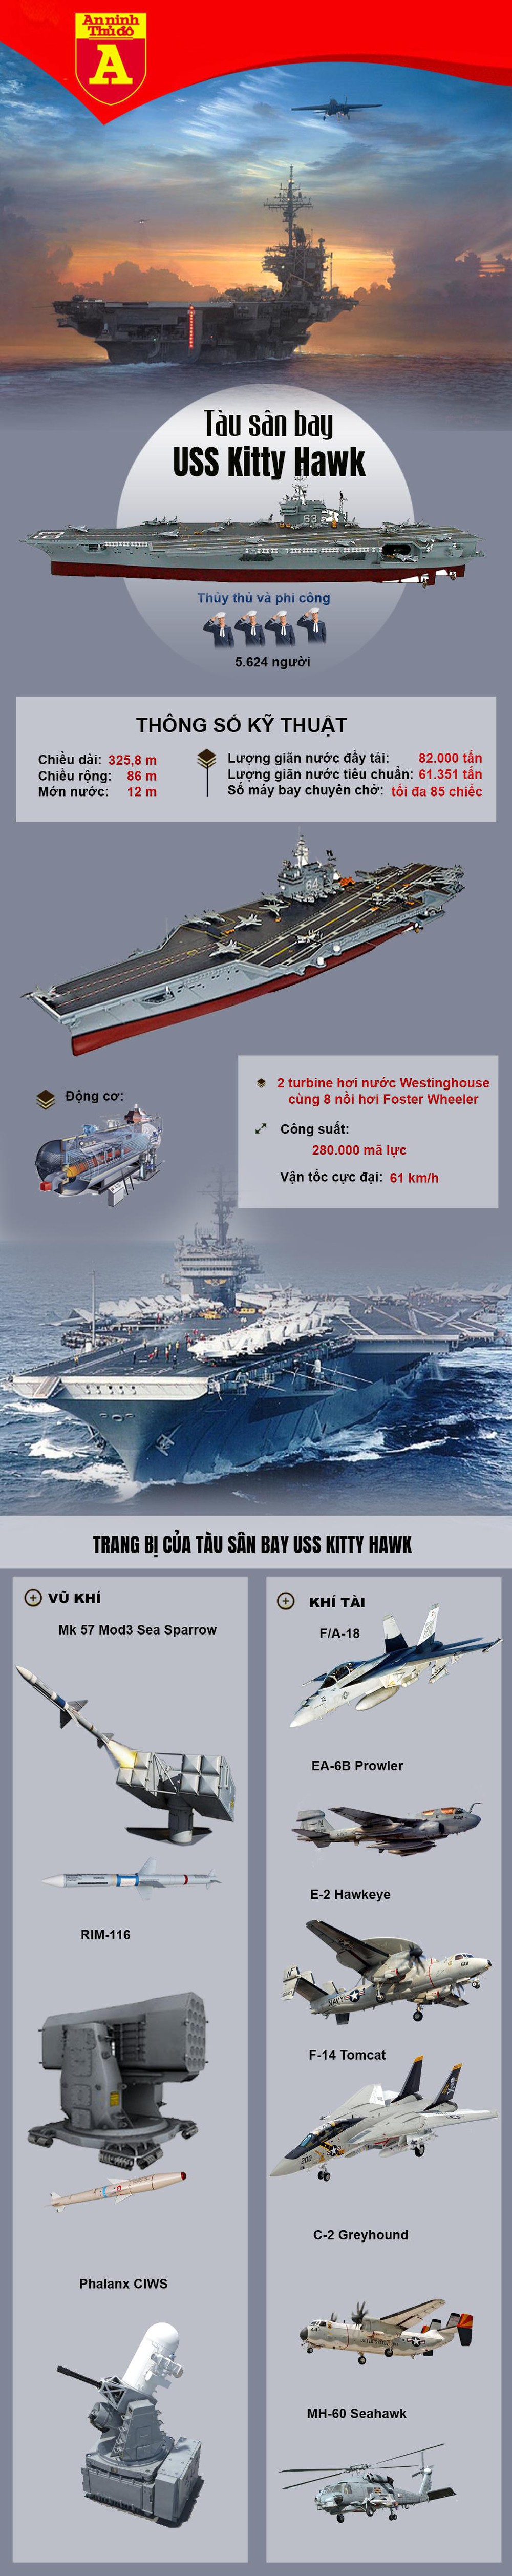 Nhìn lại sức mạnh của tàu sân bay USS Kitty Hawk - Ảnh 1